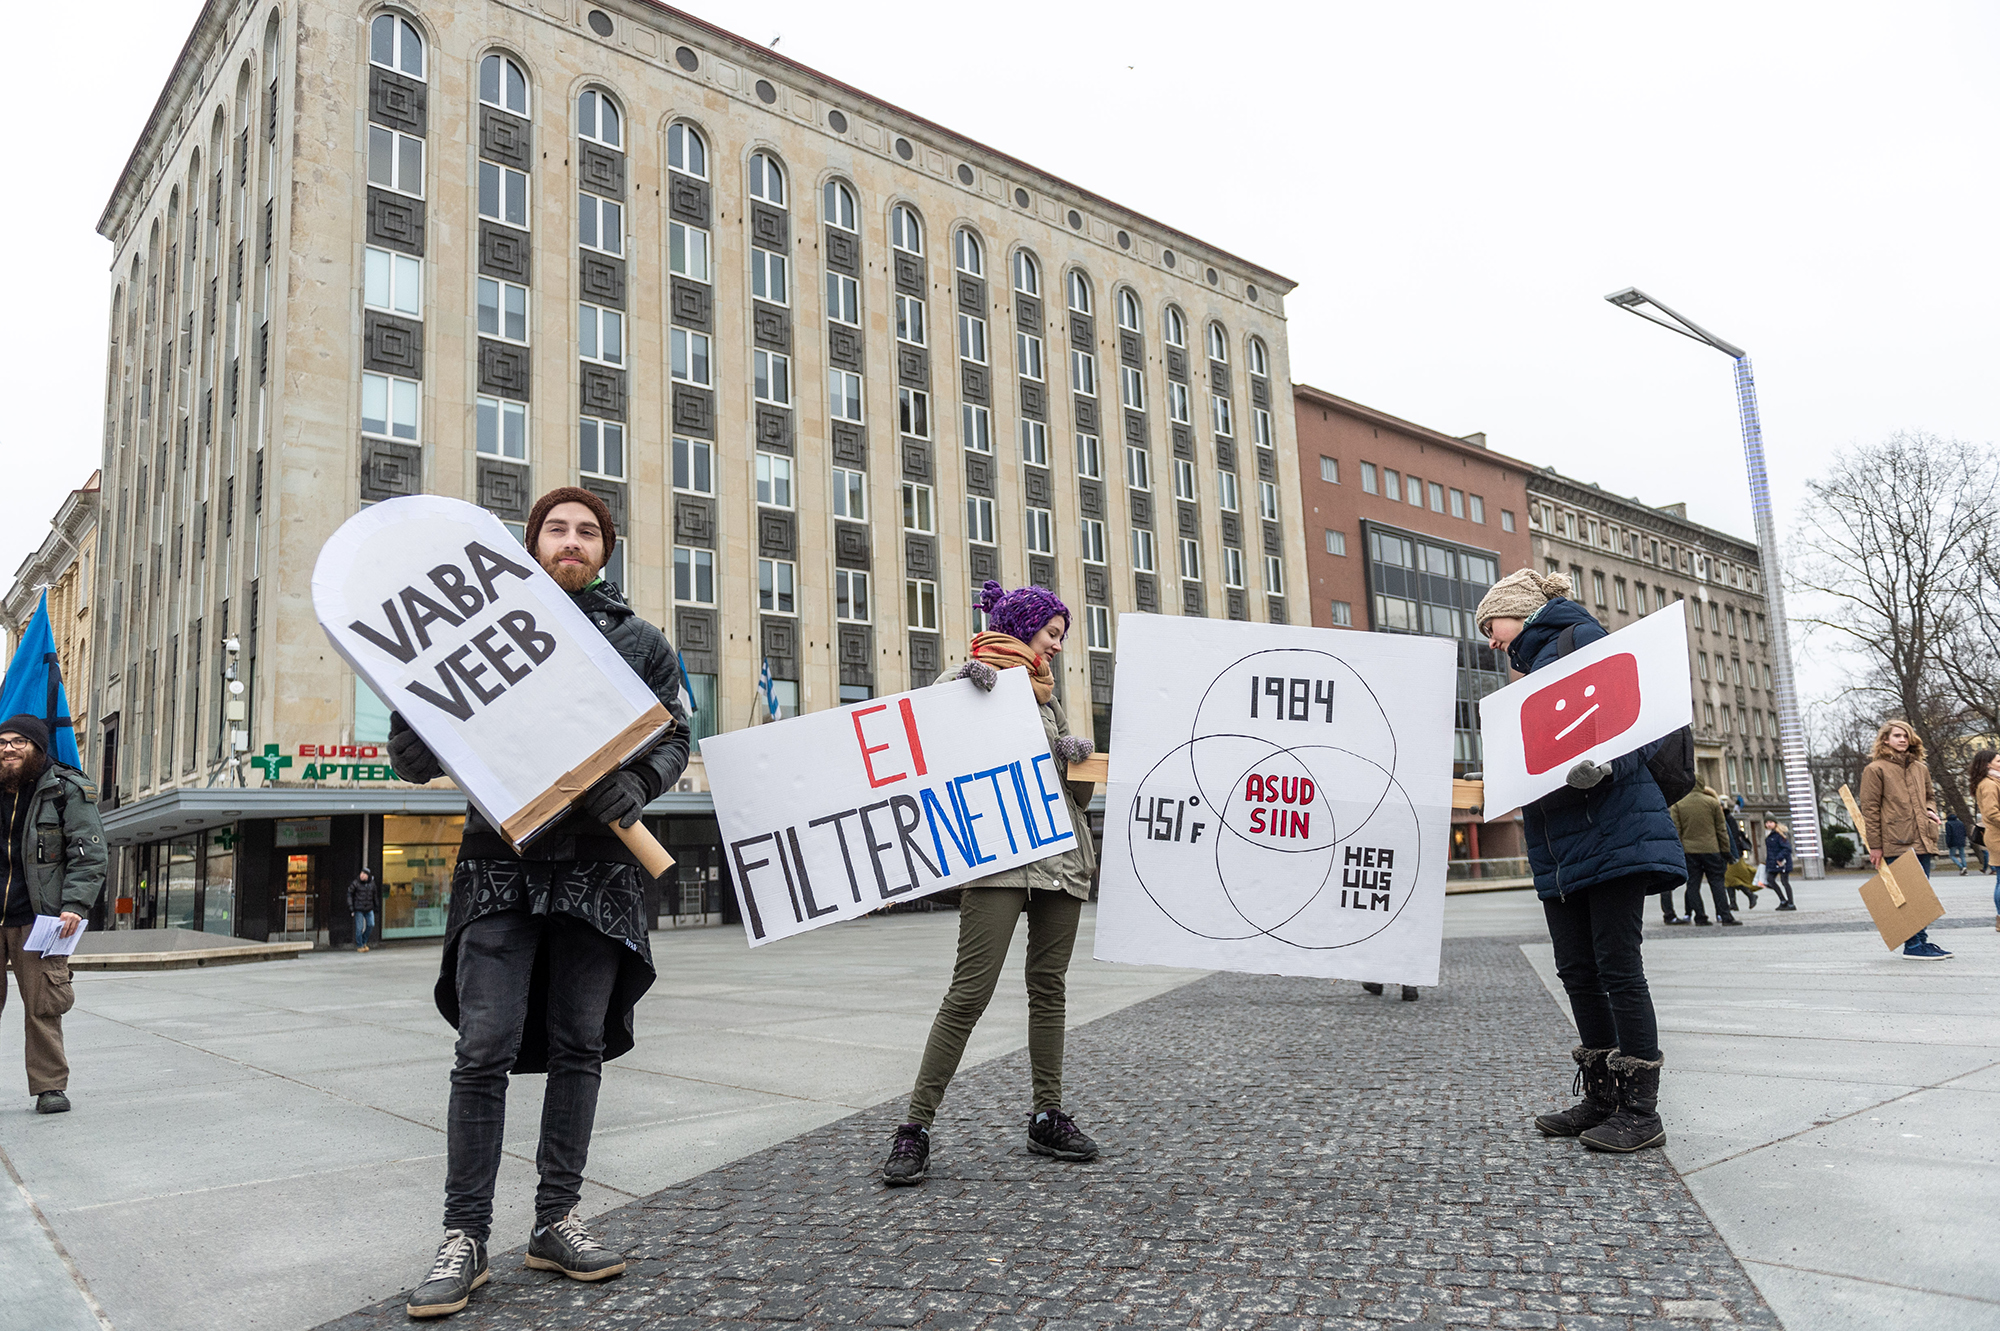 23. aprillil tulid internetiaktivistid üle Euroopa tänavatele, et autoriõiguste direktiivi vastu meelt avaldada. Tallinna Vabaduse väljakule kogunenud protestijate pingutused jäid siiski hüüdjaks hääleks kõrbes ja nüüdseks on direktiiv vastu võetud. Foto: Remp Tõnismäe / Postimees